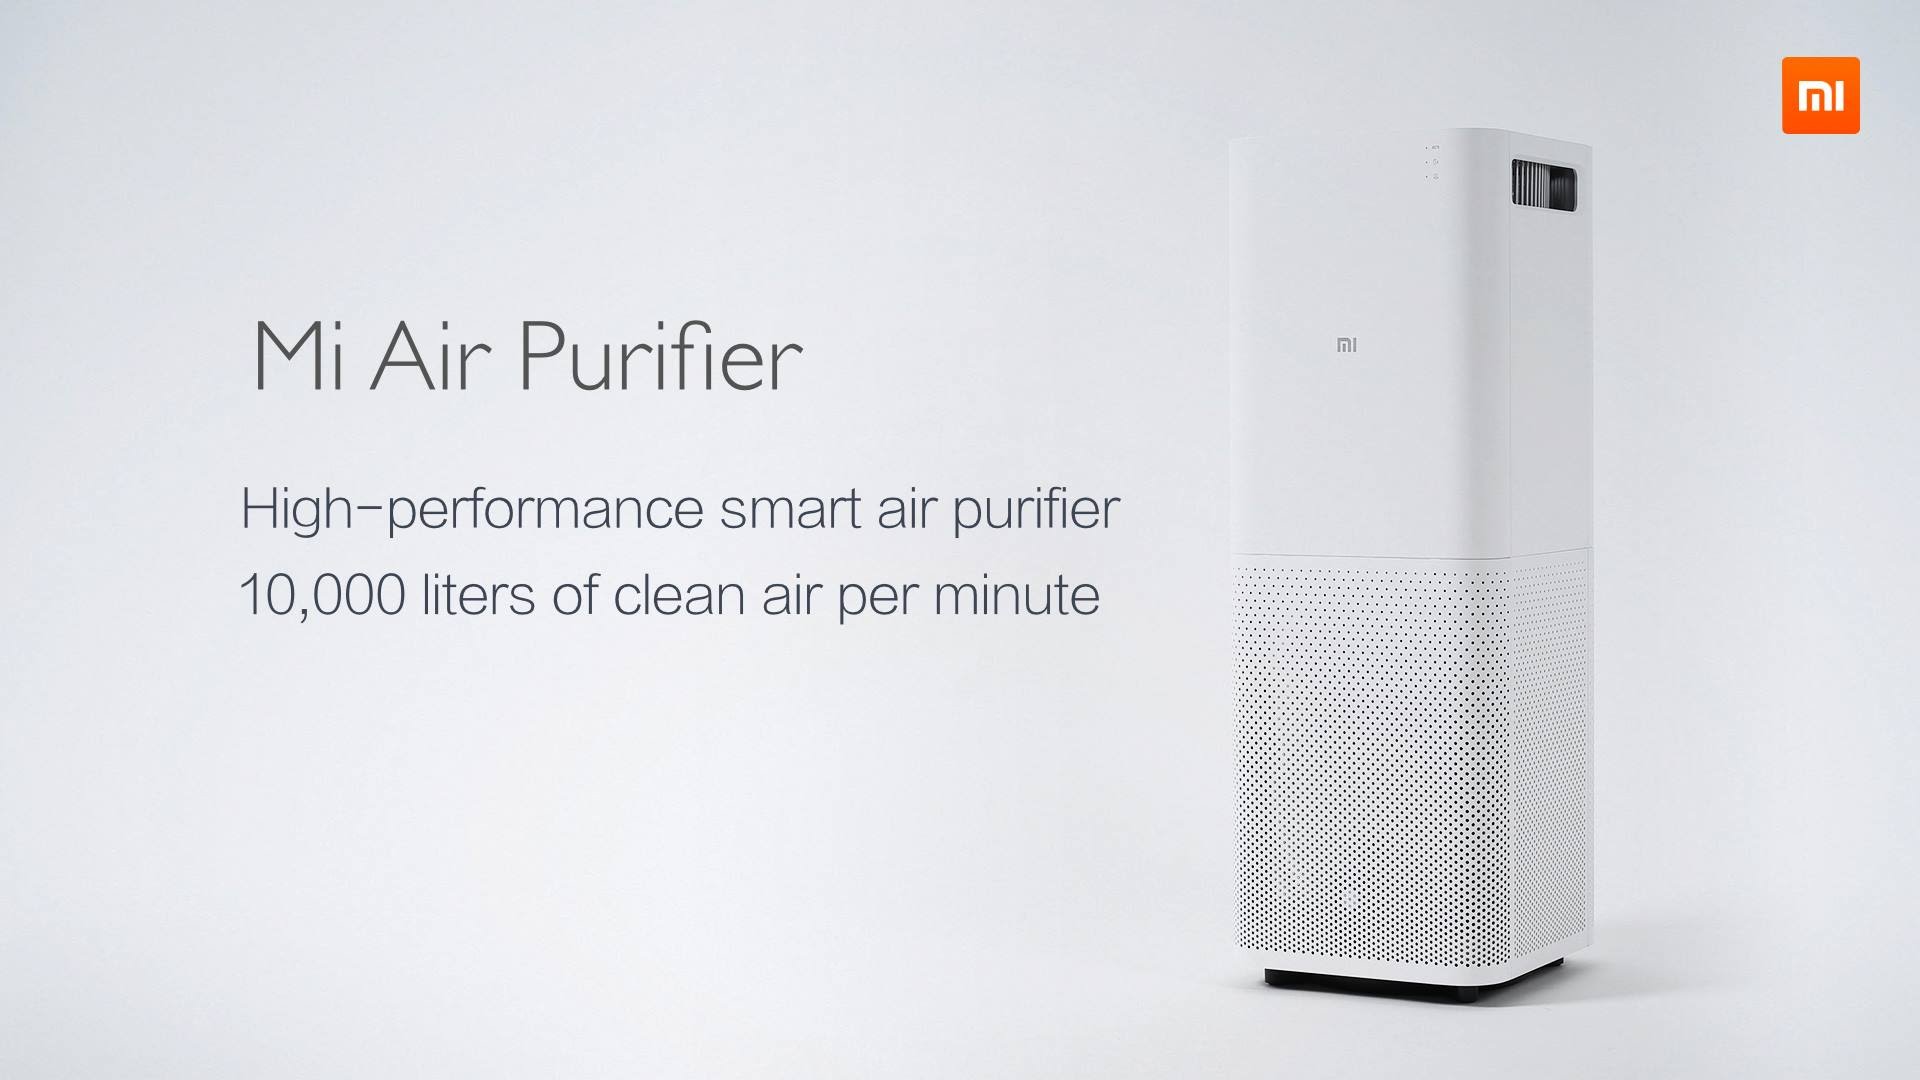 The Mi air-purifier